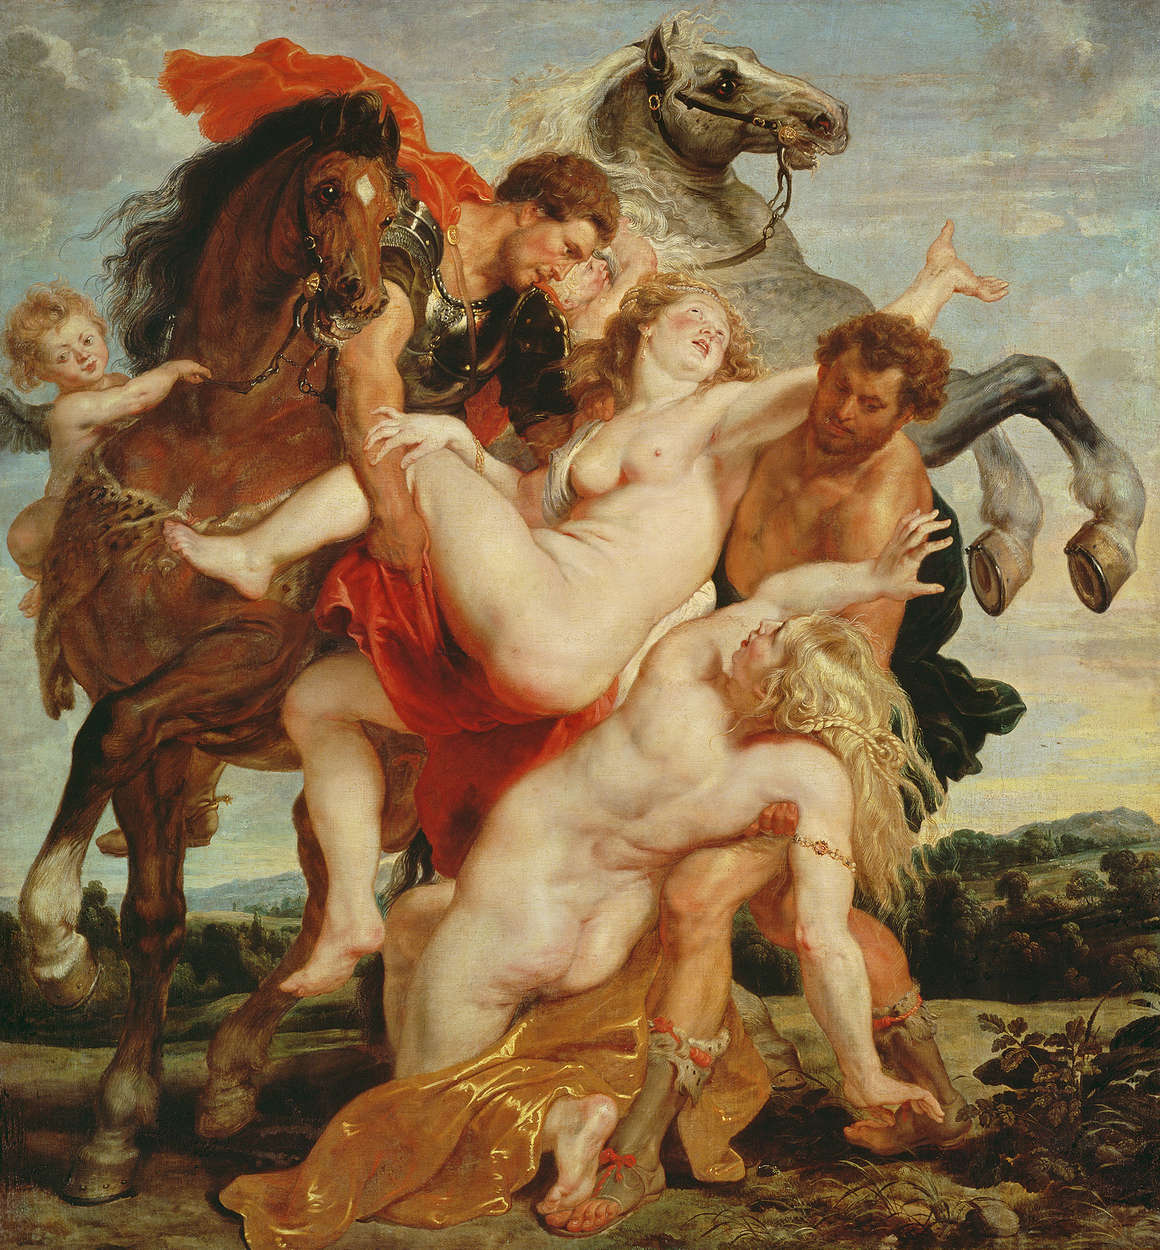             Papier peint "Enlèvement des filles de Leucippe" de Peter Paul Rubens
        